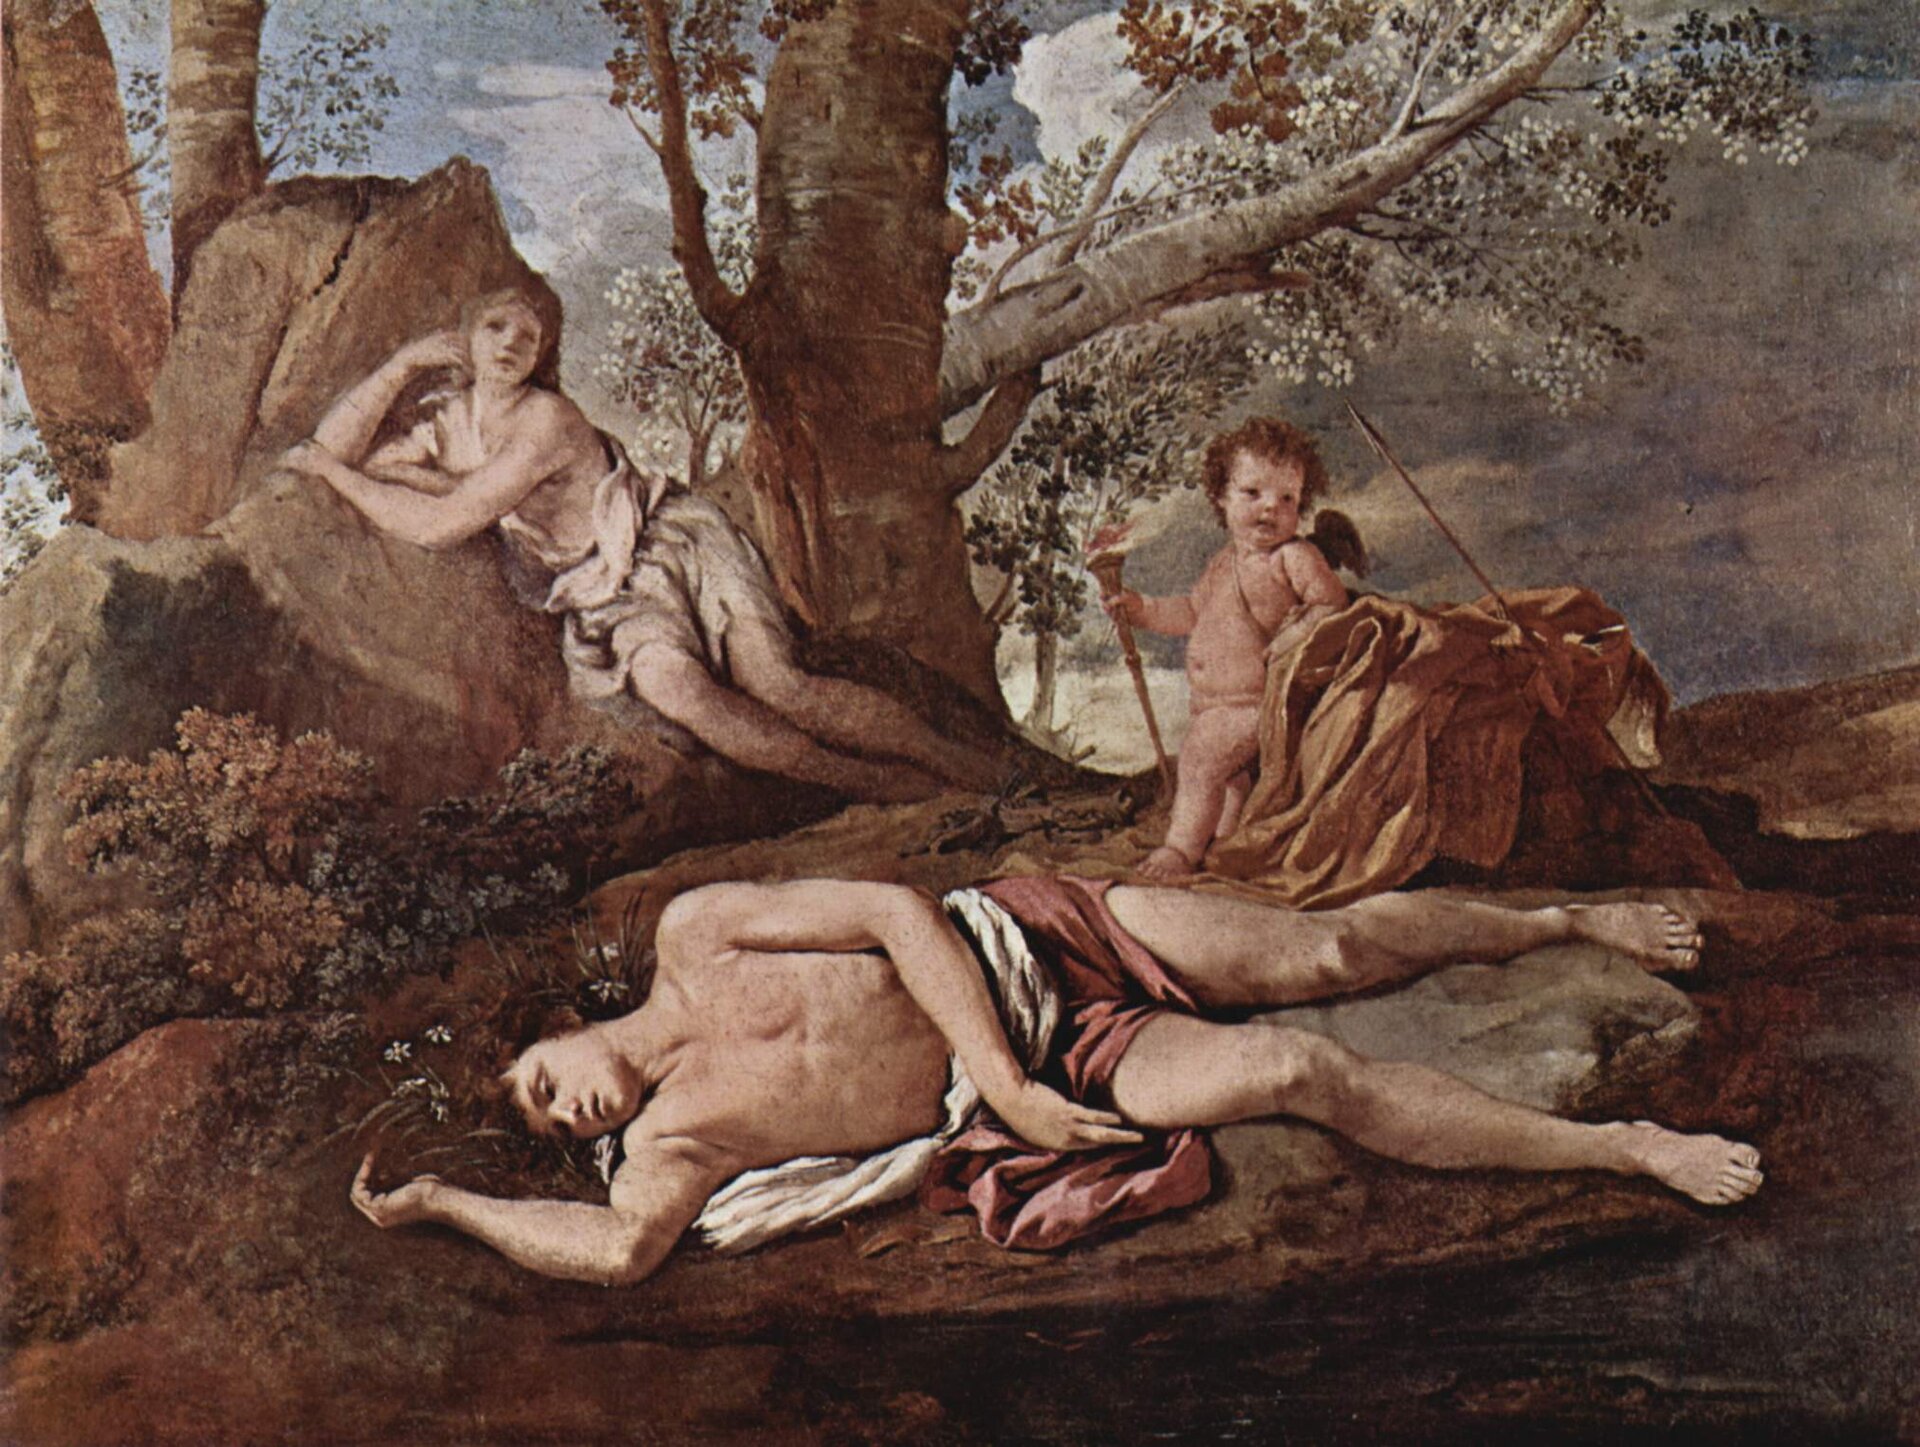 Obraz przedstawia scenę rodzajową. Na polanie, pośród drzew śpi wpółnagi, młody mężczyzna. Śpiącemu przygląda się młoda kobieta siedząca nieopodal, przy drzewach i mały, skrzydlaty cherubin.